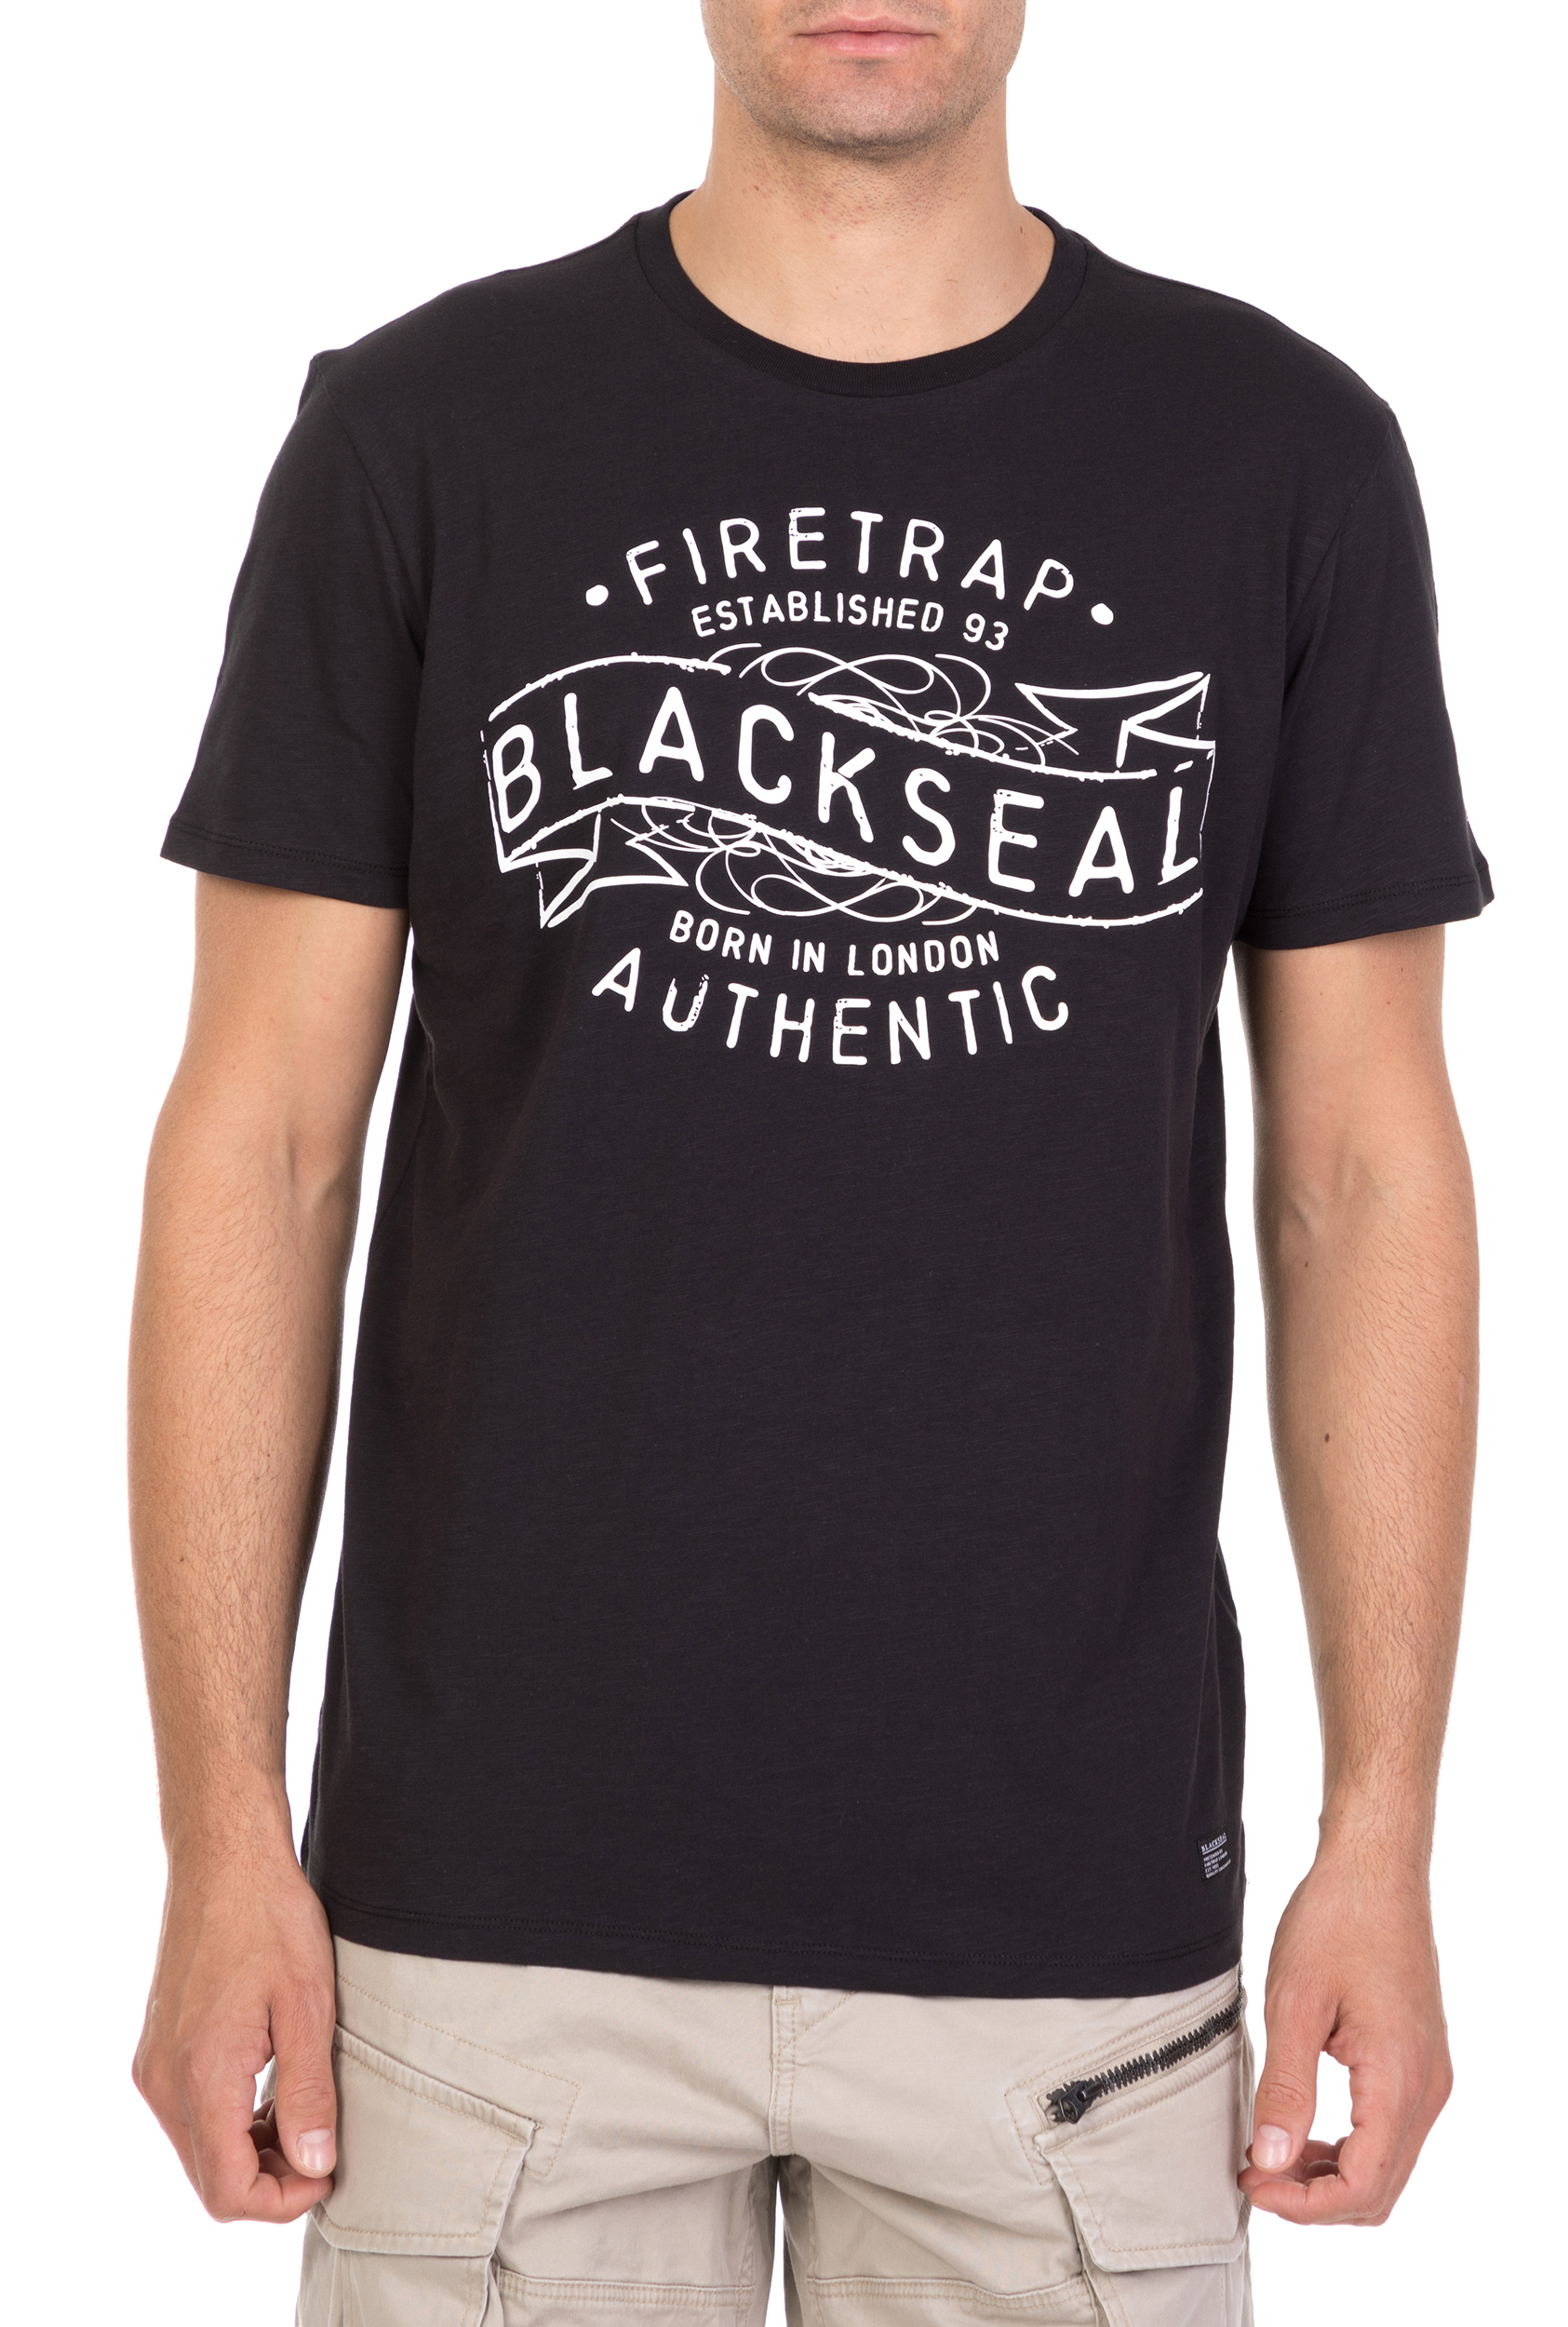 Ανδρικά/Ρούχα/Μπλούζες/Κοντομάνικες FIRETRAP - Ανδρική κοντομάνικη μπλούζα Firetrap Cypher μαύρη